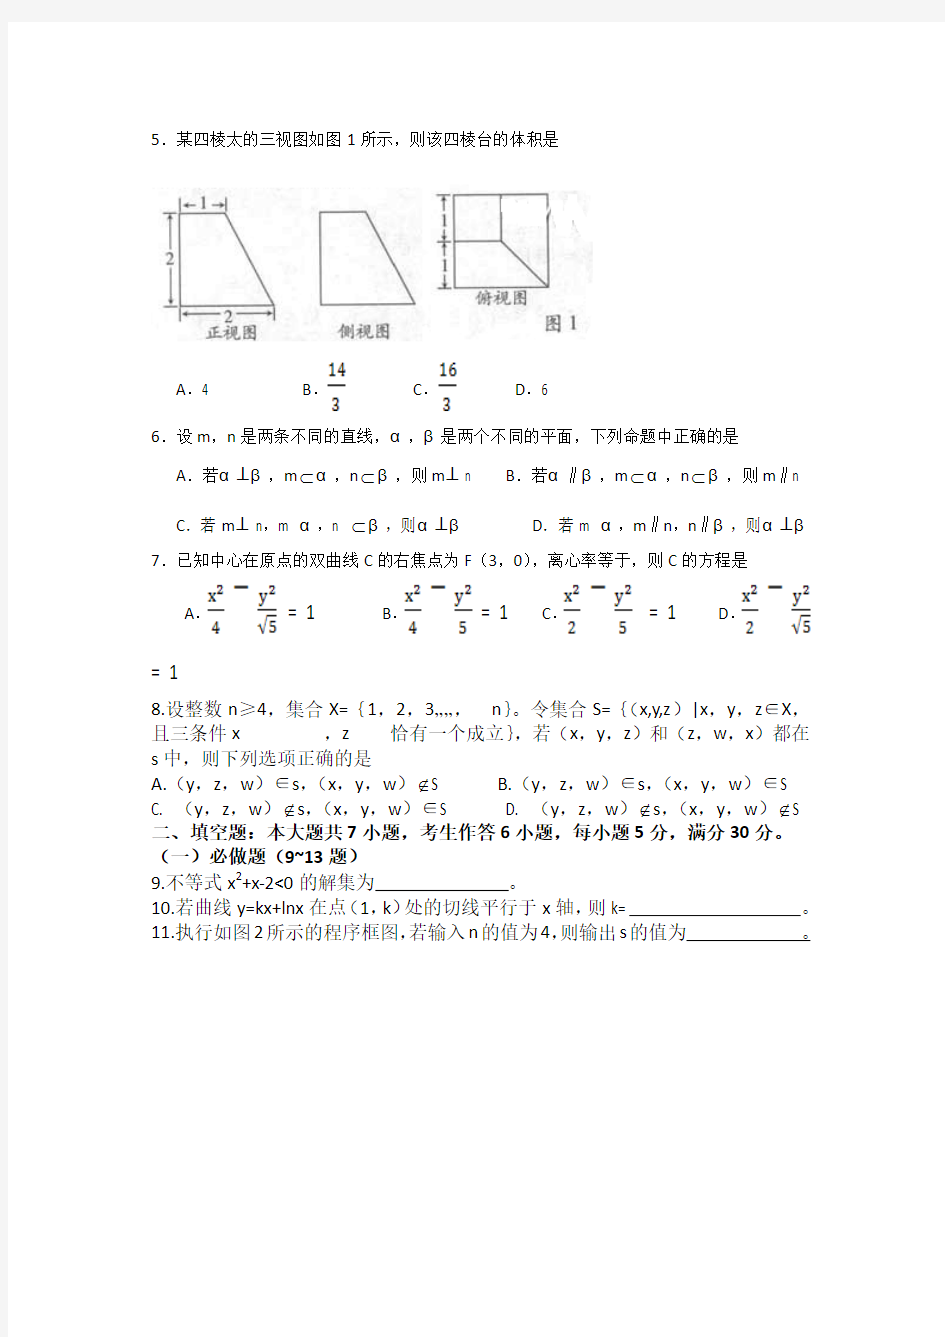 2013年高考真题——理科数学(广东卷)wor版